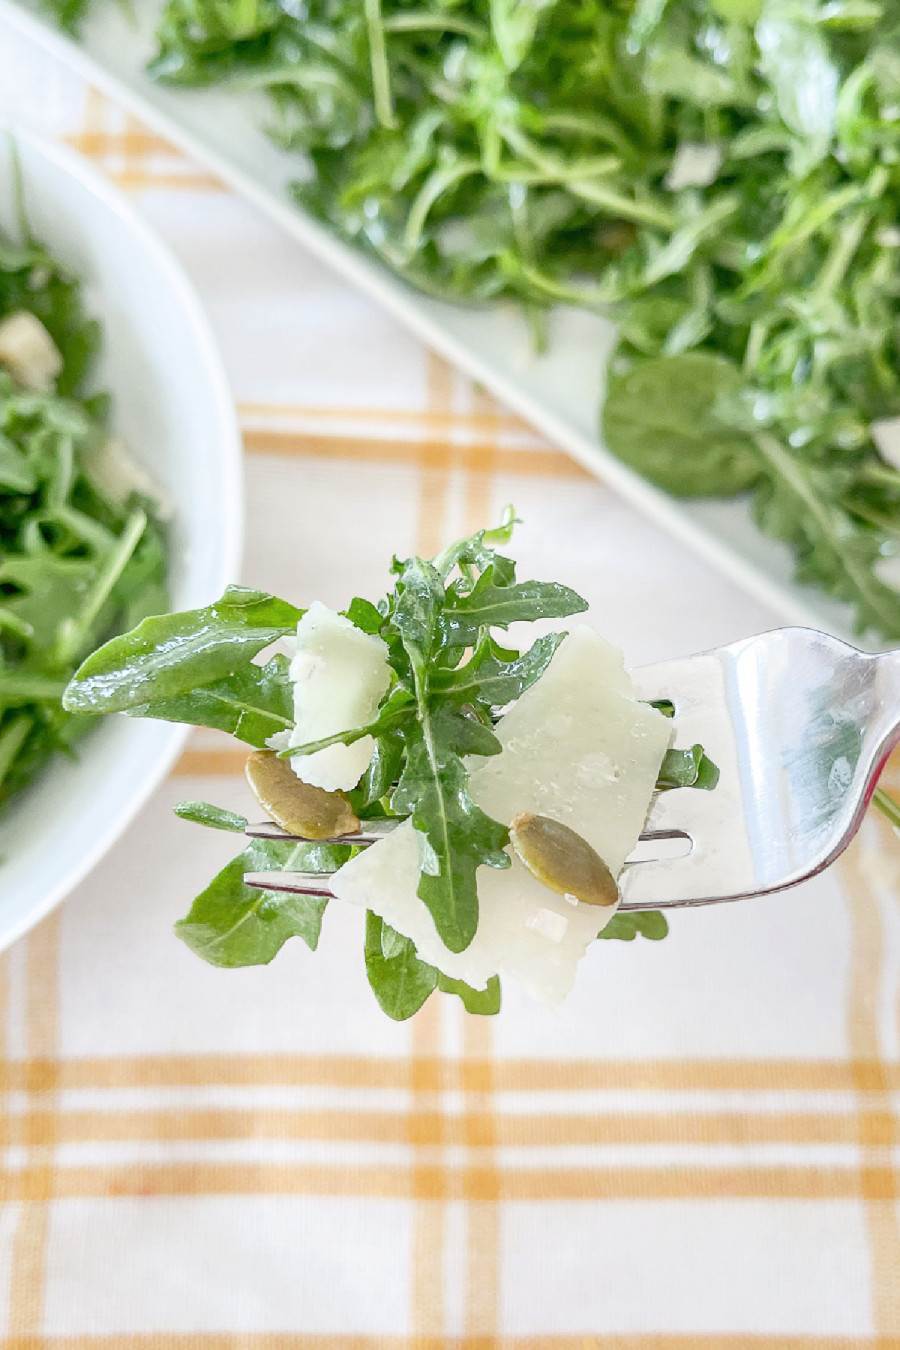 Arugula salad with lemon vinaigrette